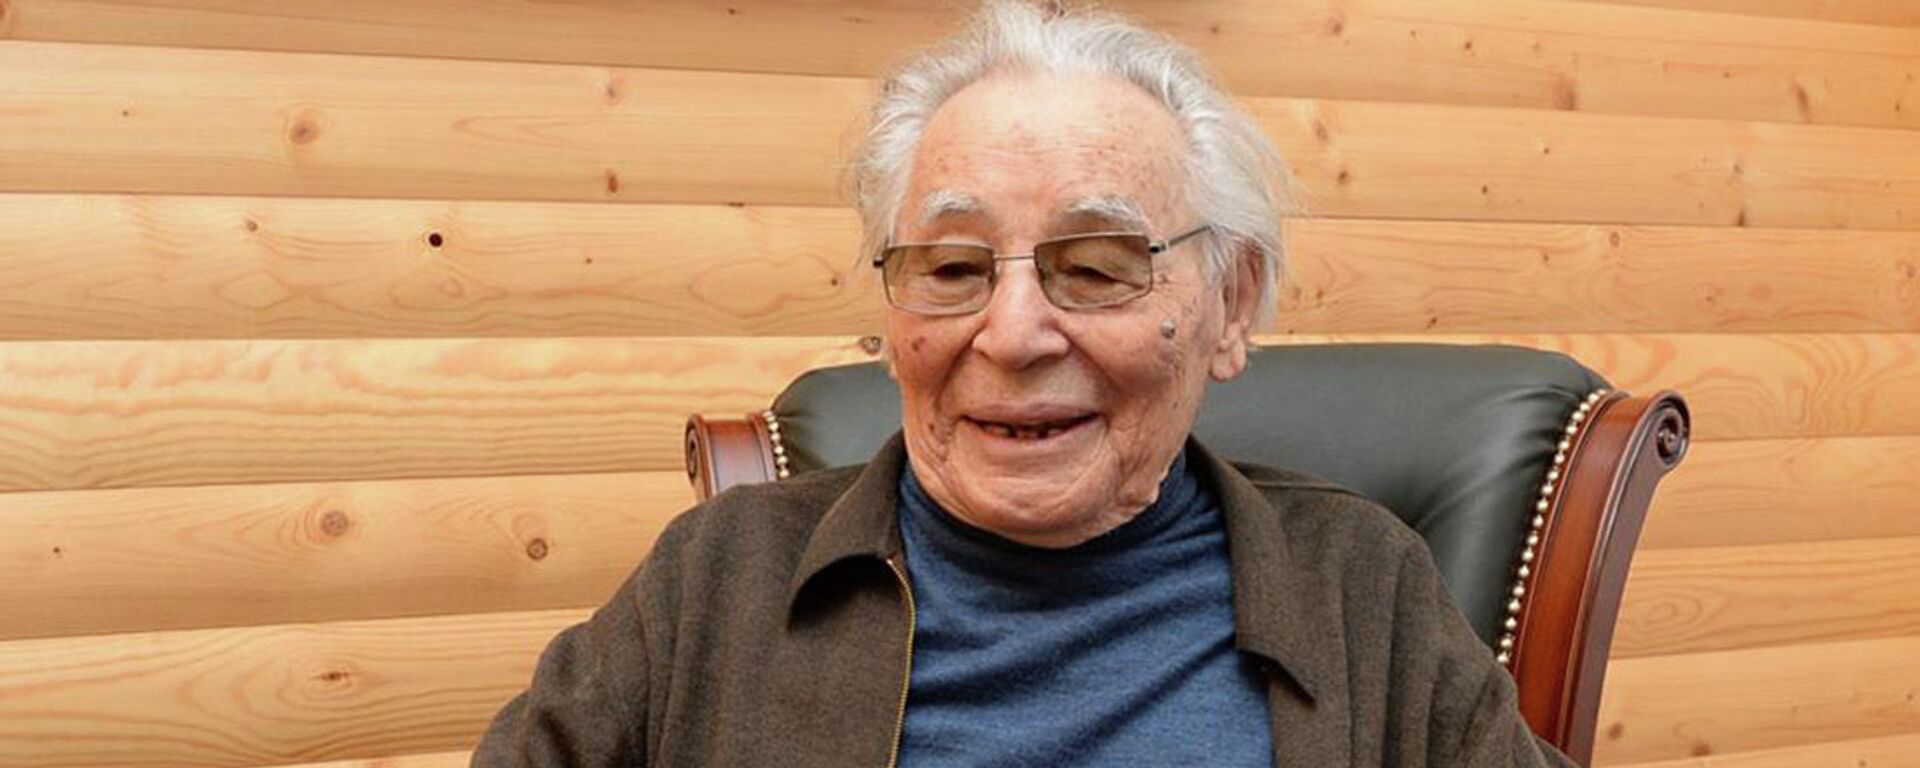 Писатель Абдижамил Нурпеисов, 95 лет, 2019 год - Sputnik Казахстан, 1920, 29.10.2019